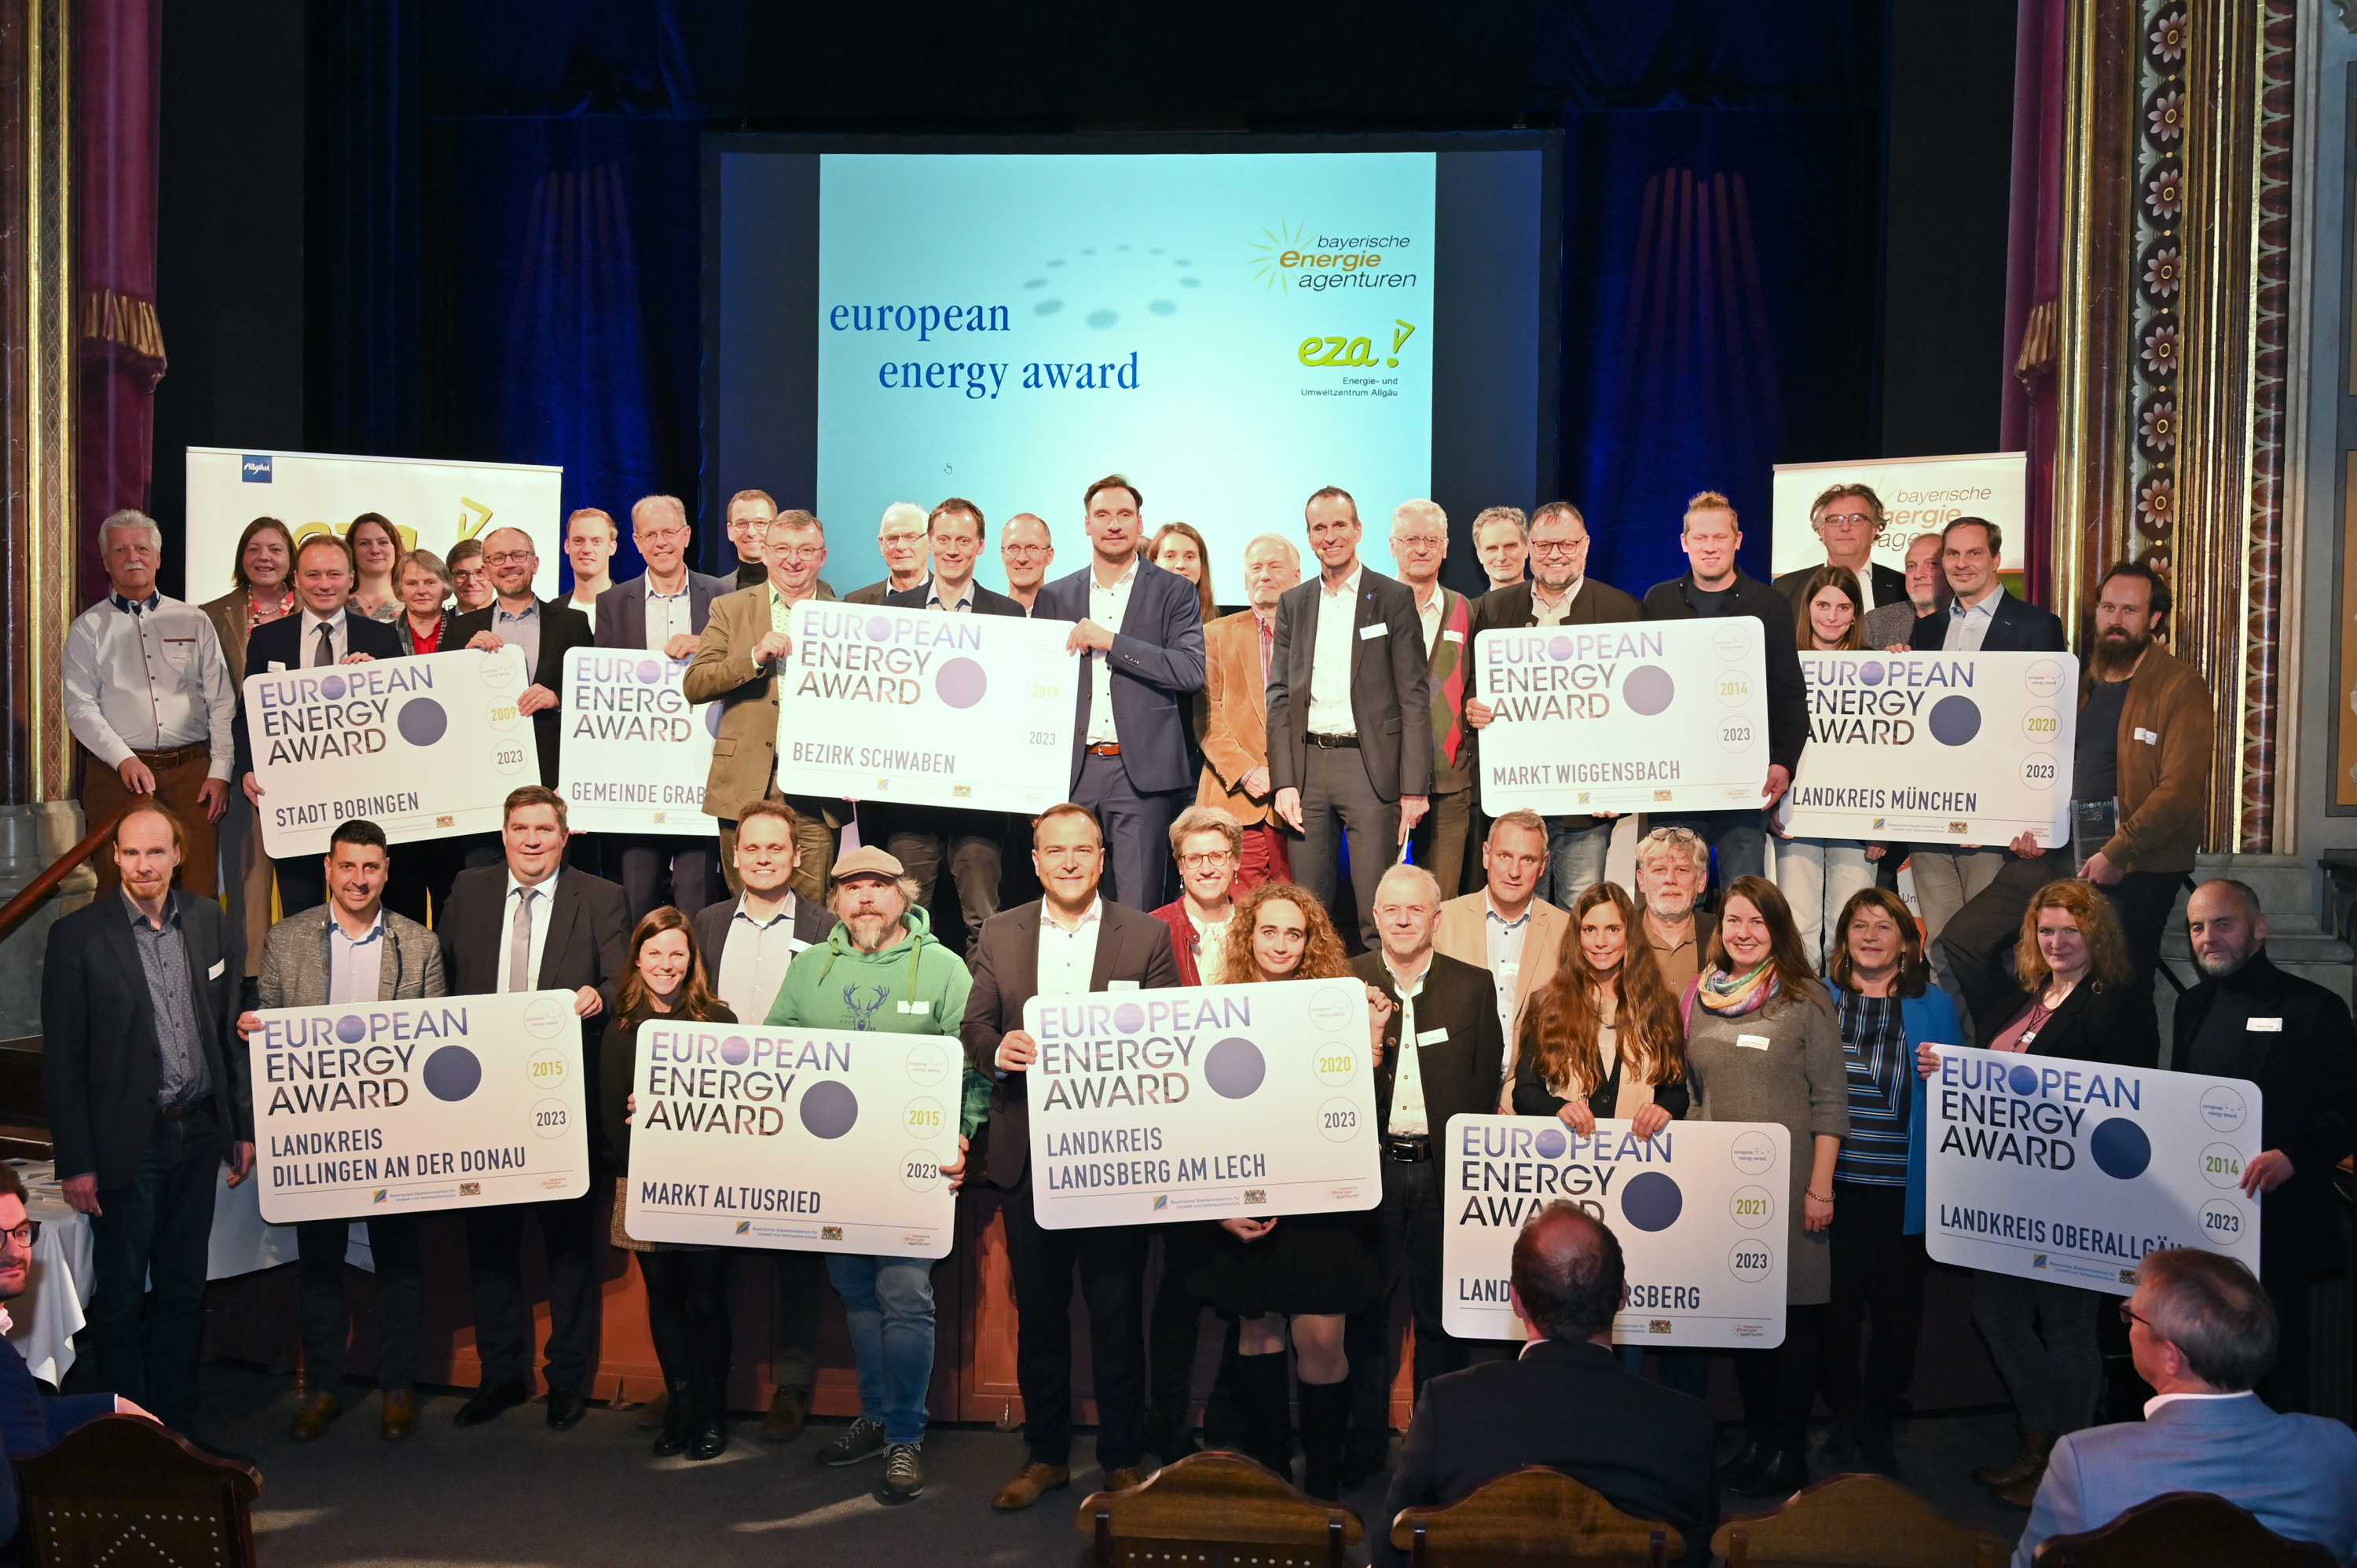 Gruppenbild der Verleihung des European Energy Award 2023; Bild vergrößert sich per Mausklick